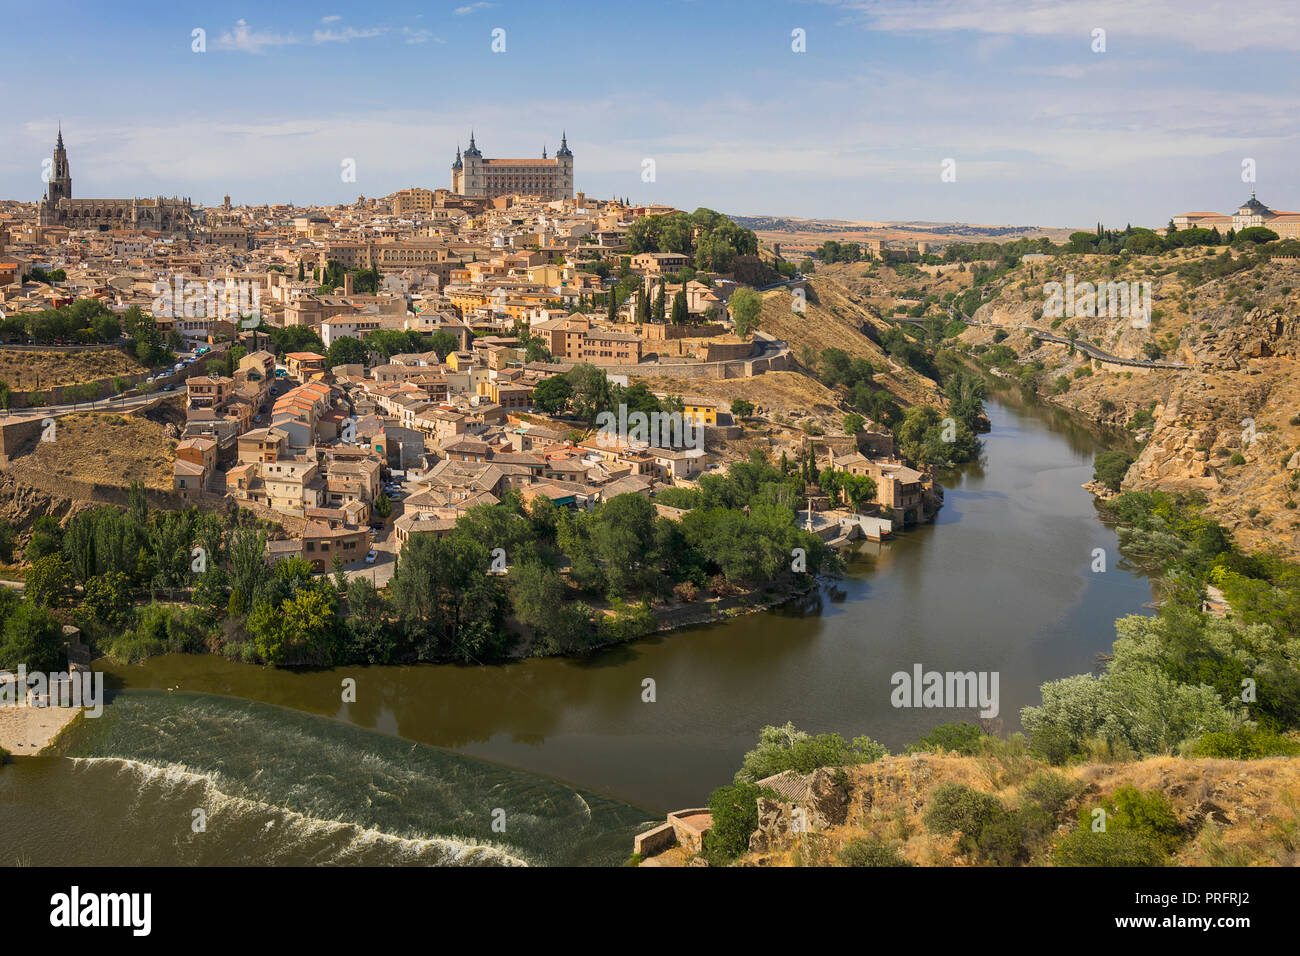 Provinz Toledo, Toledo, Kastilien-La Mancha Spanien. Der Blick auf die Altstadt, den Tagus Fluss (Rio Tajo) und dem Alcazar. Die cathe Stockfoto